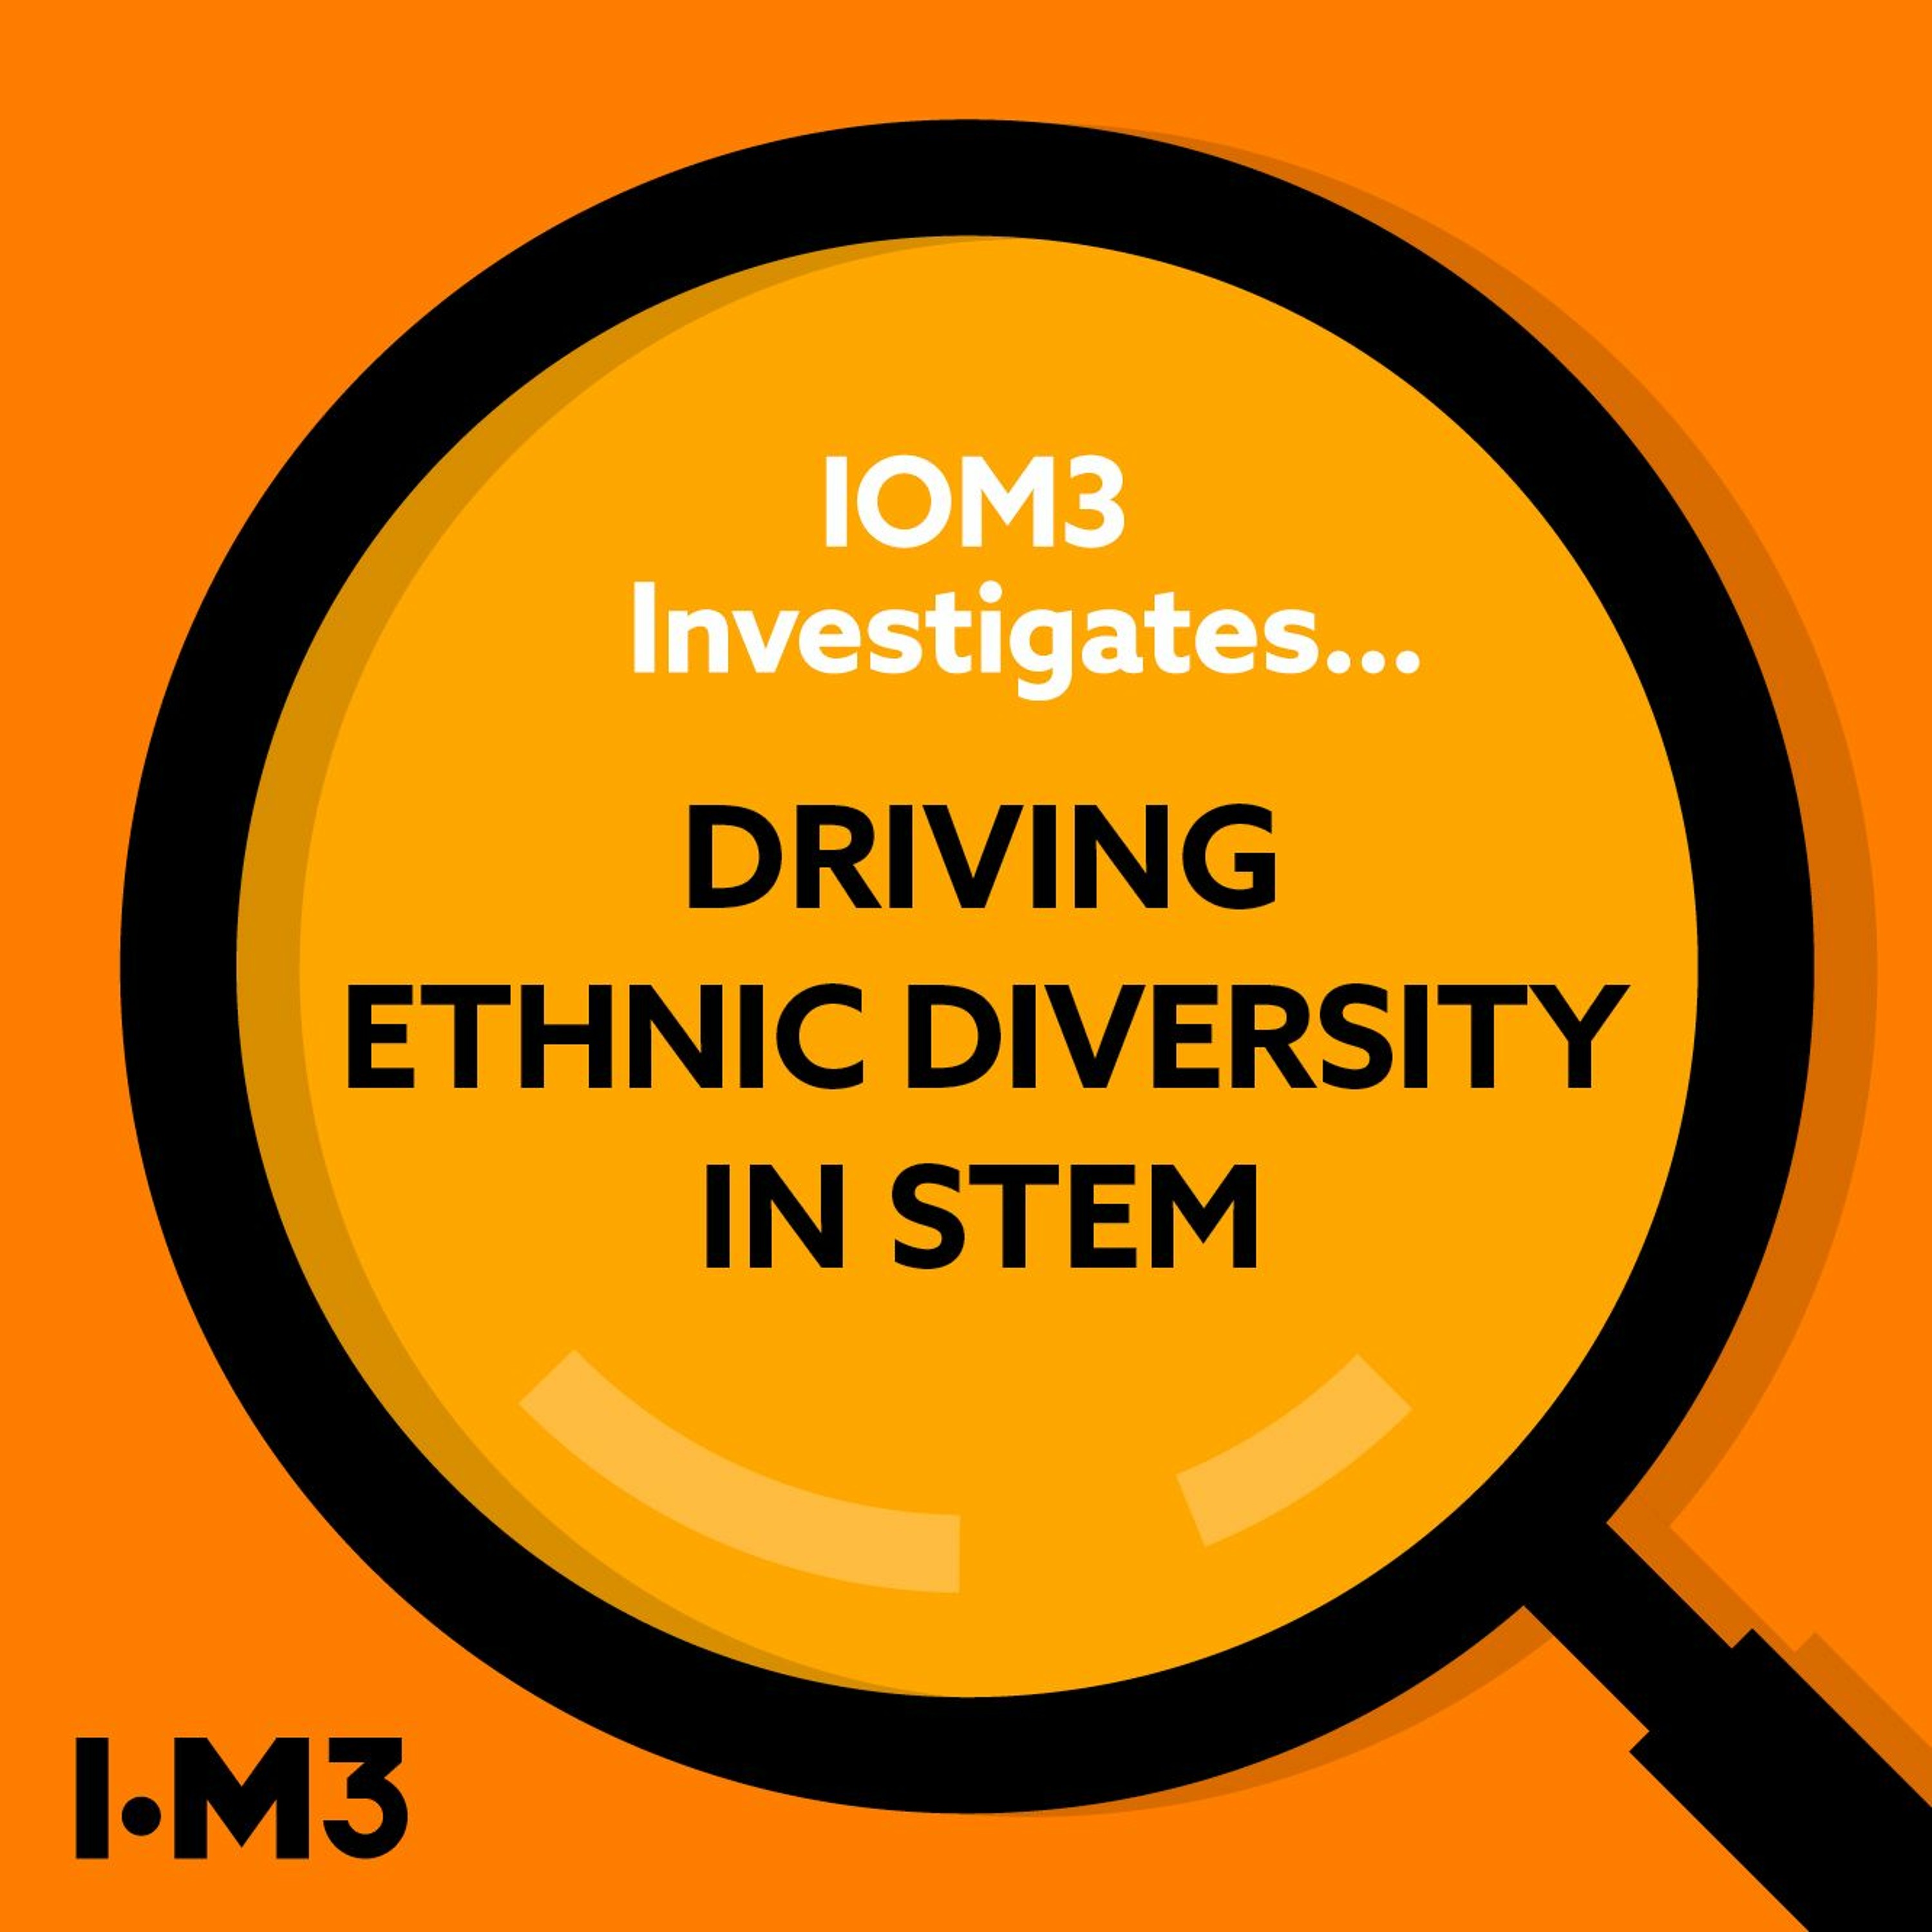 IOM3 Investigates... Driving ethnic diversity in STEM